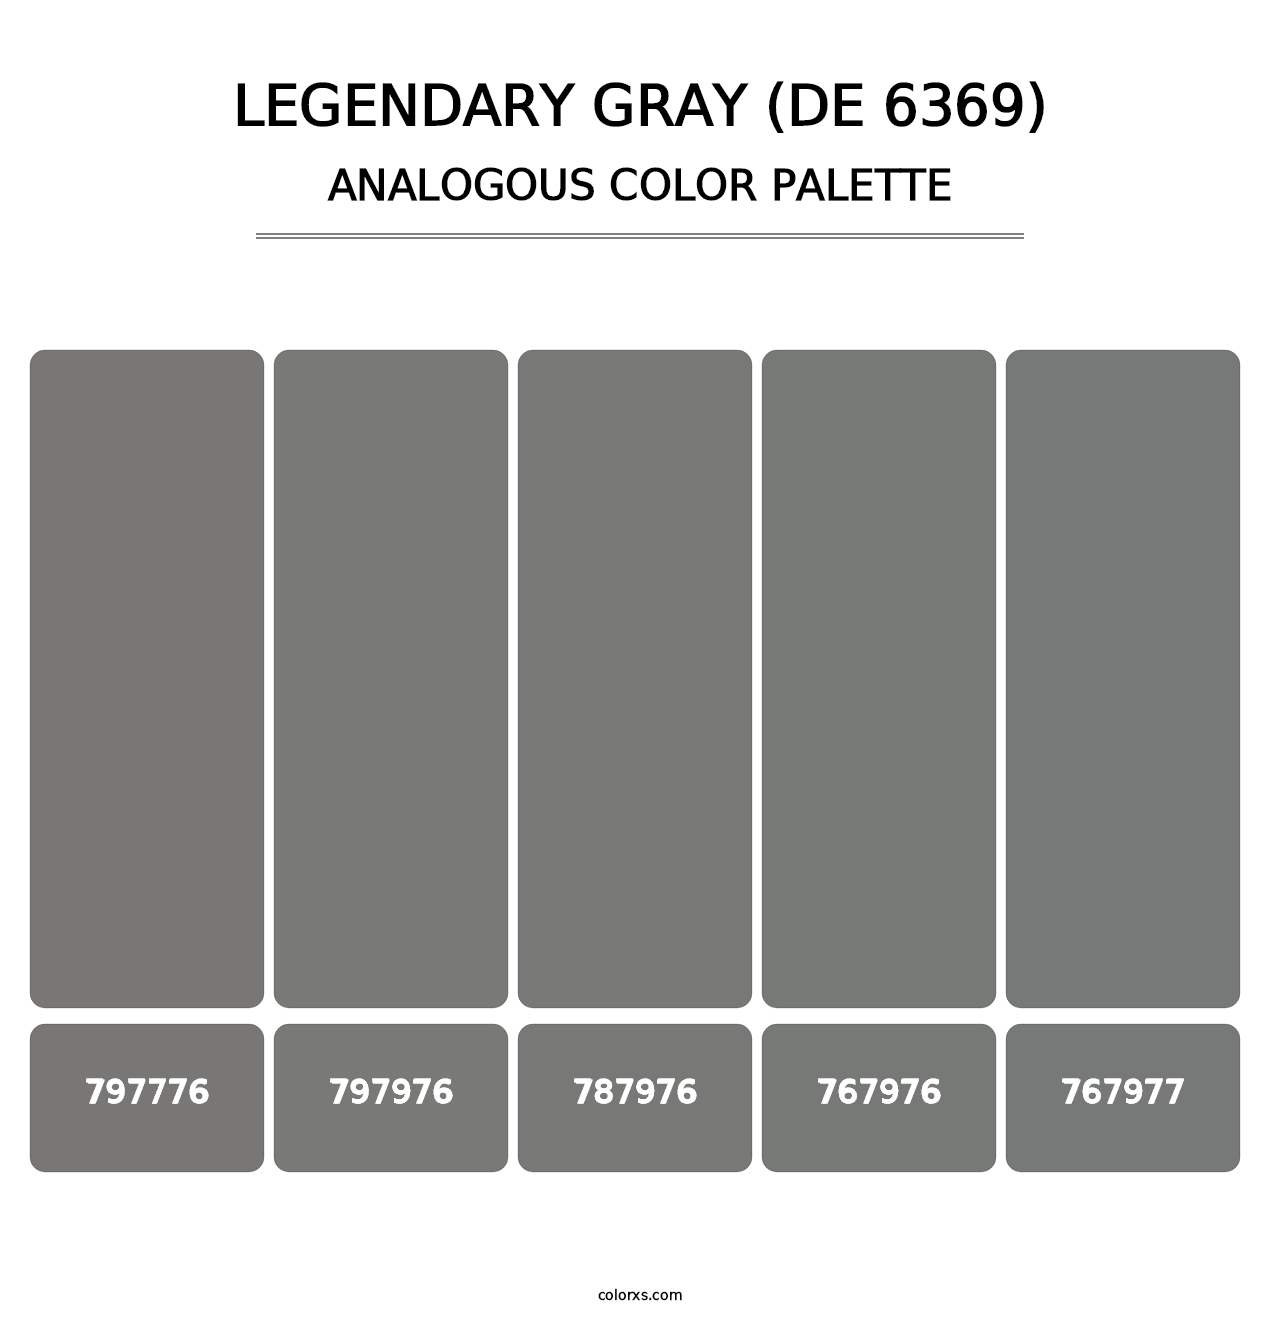 Legendary Gray (DE 6369) - Analogous Color Palette